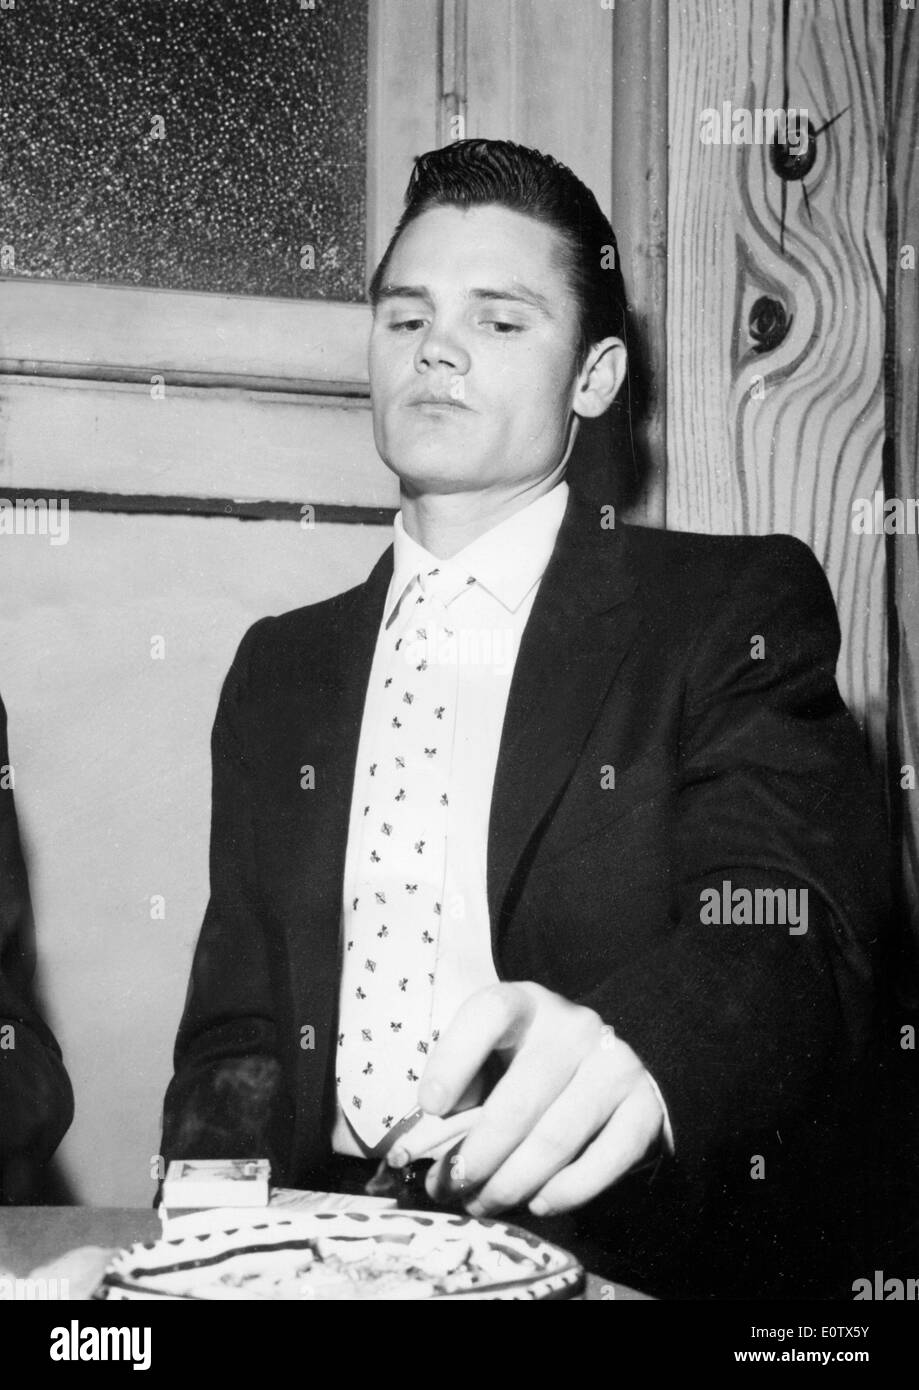 Le Prince de Cool Chet Baker assis fumer une cigarette Banque D'Images